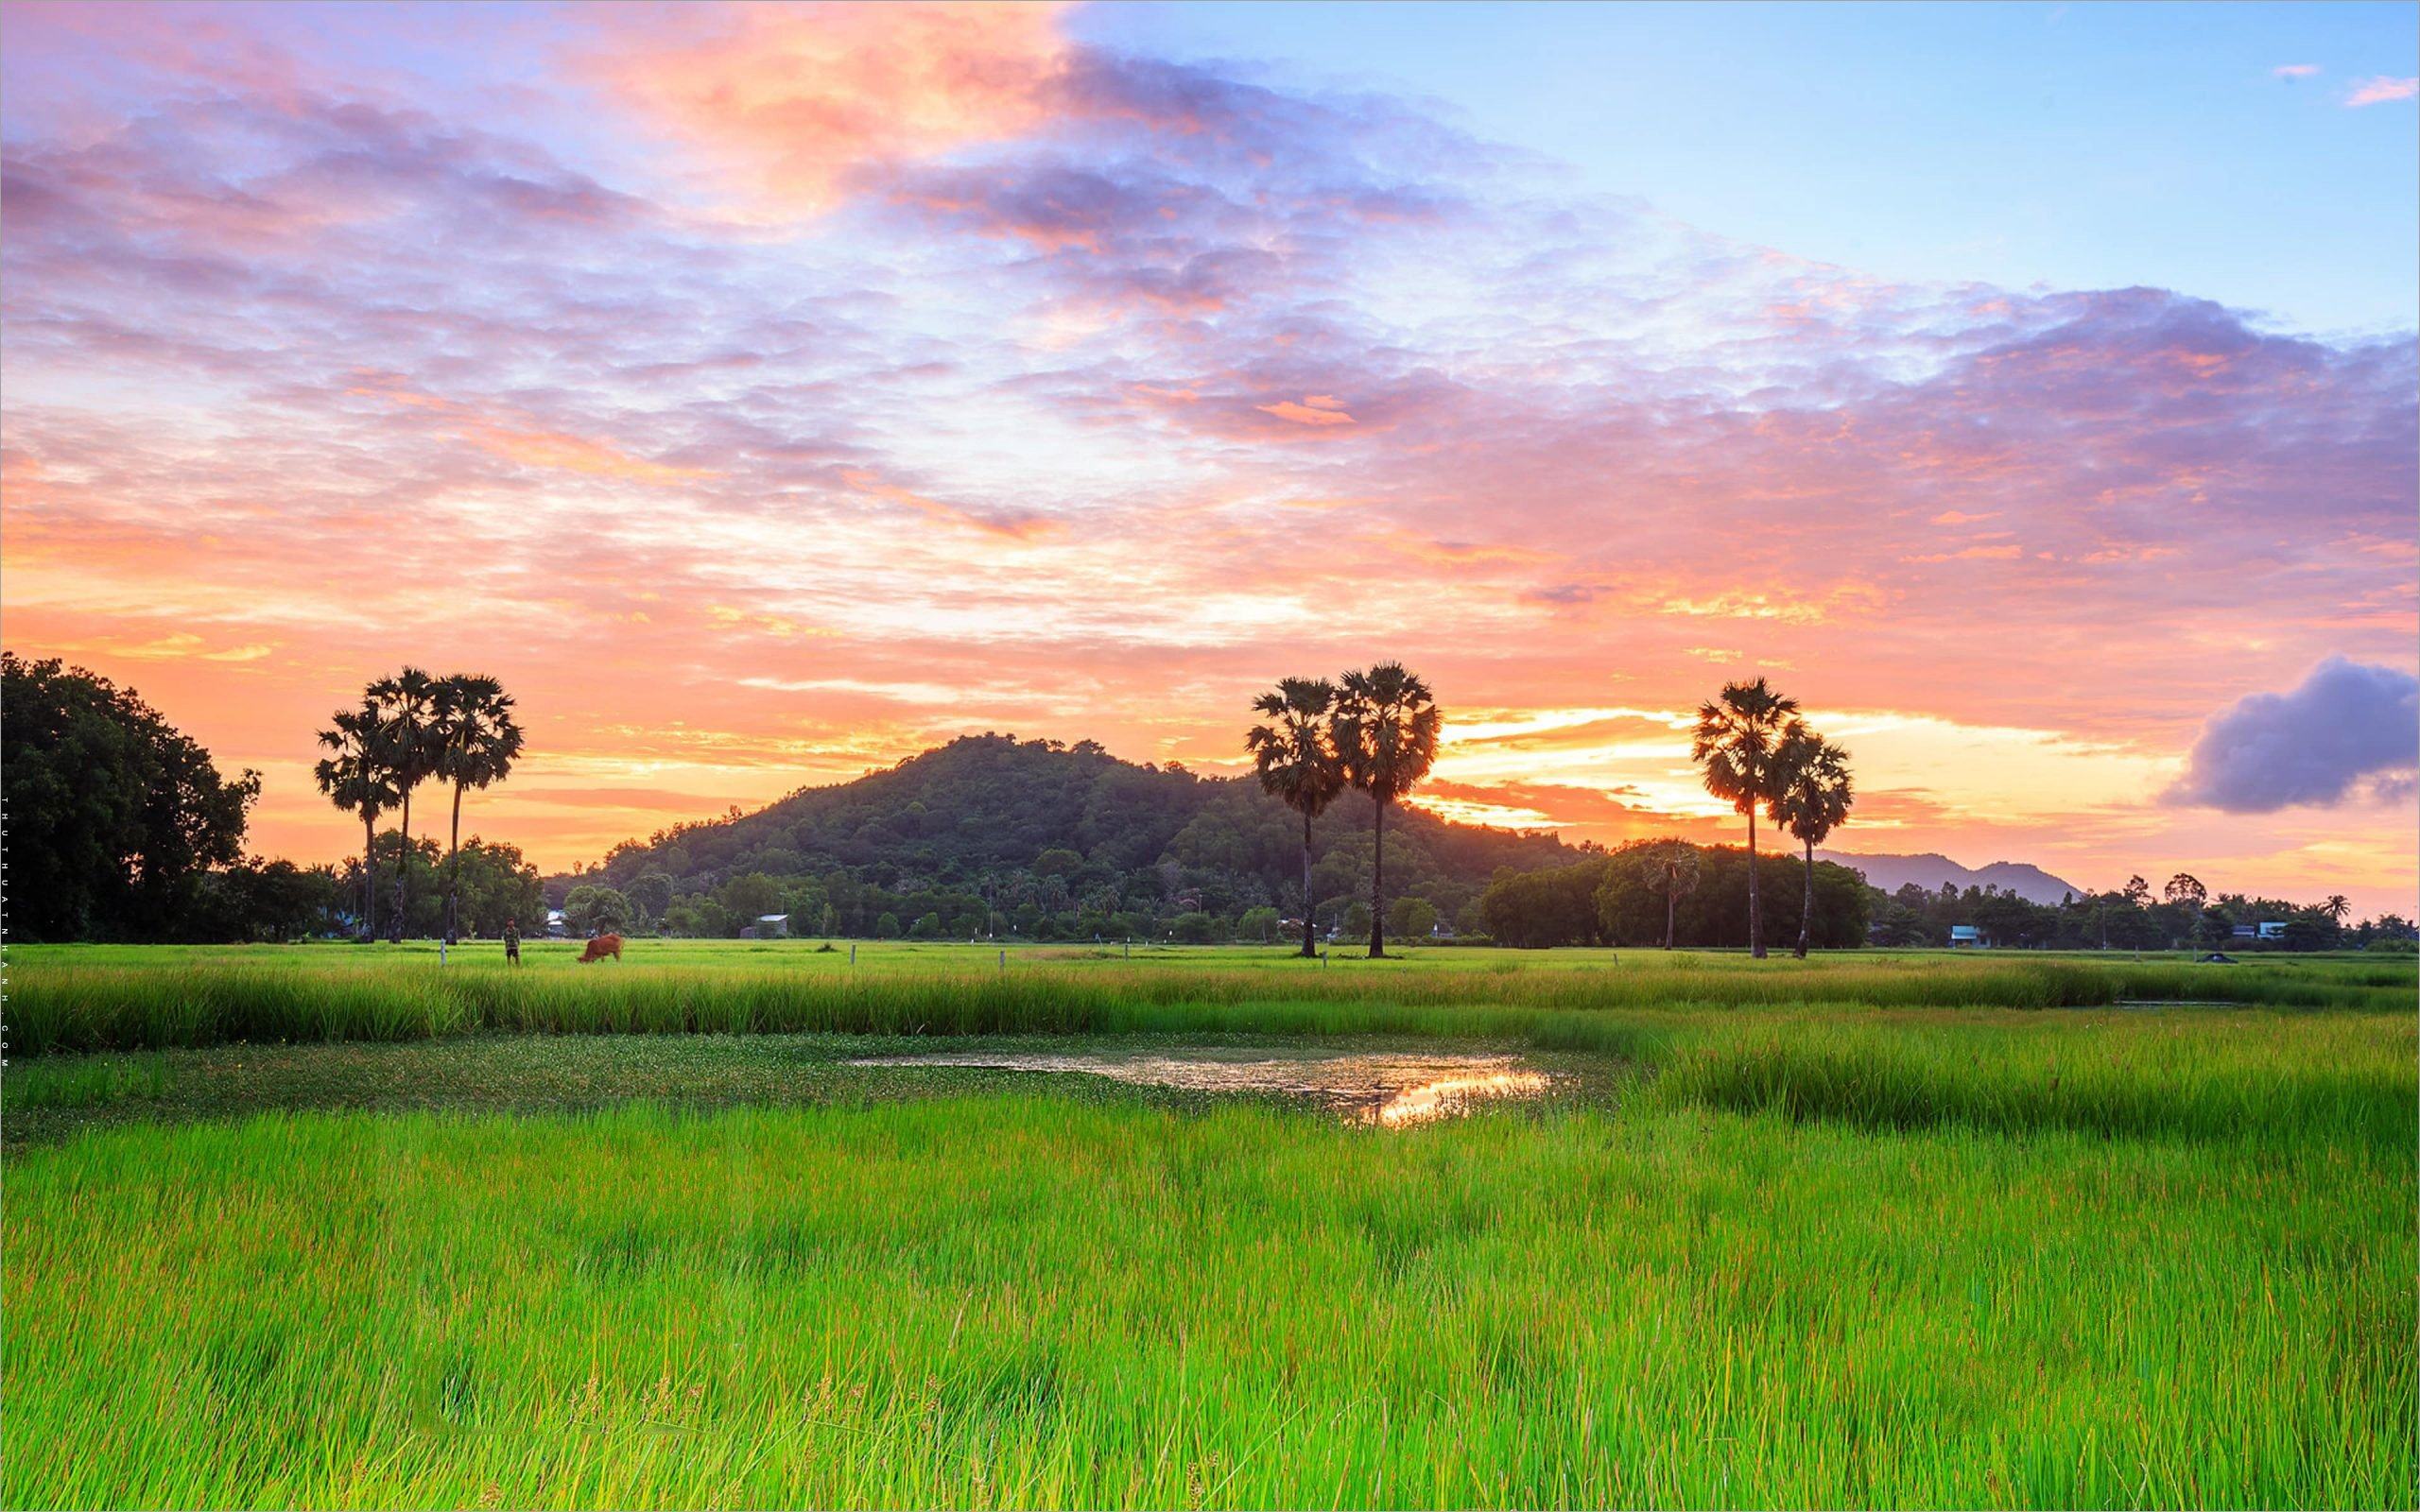 Những hình nền với cảnh đồng lúa của quê hương Việt Nam sẽ khiến bạn phải hạnh phúc và tự hào về đất nước của mình. Hãy cùng chiêm ngưỡng những tấm hình đẹp nhất!